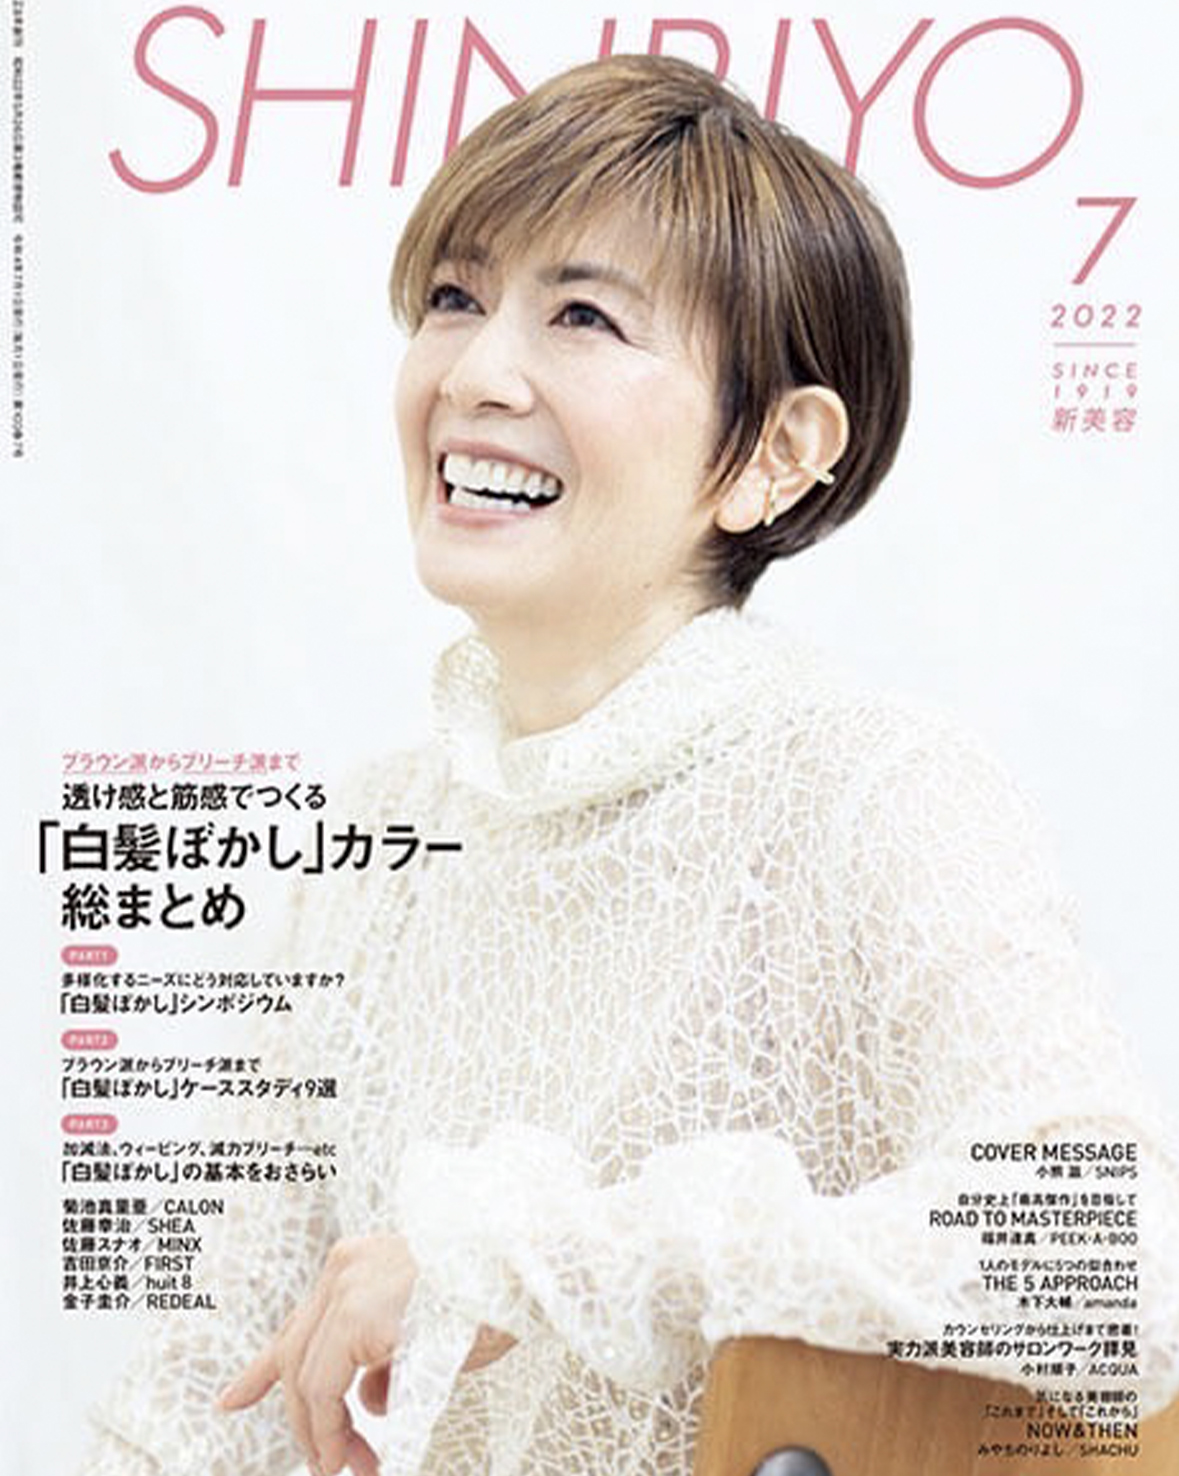 美容業界紙 SHINBIYO 7月号掲載。